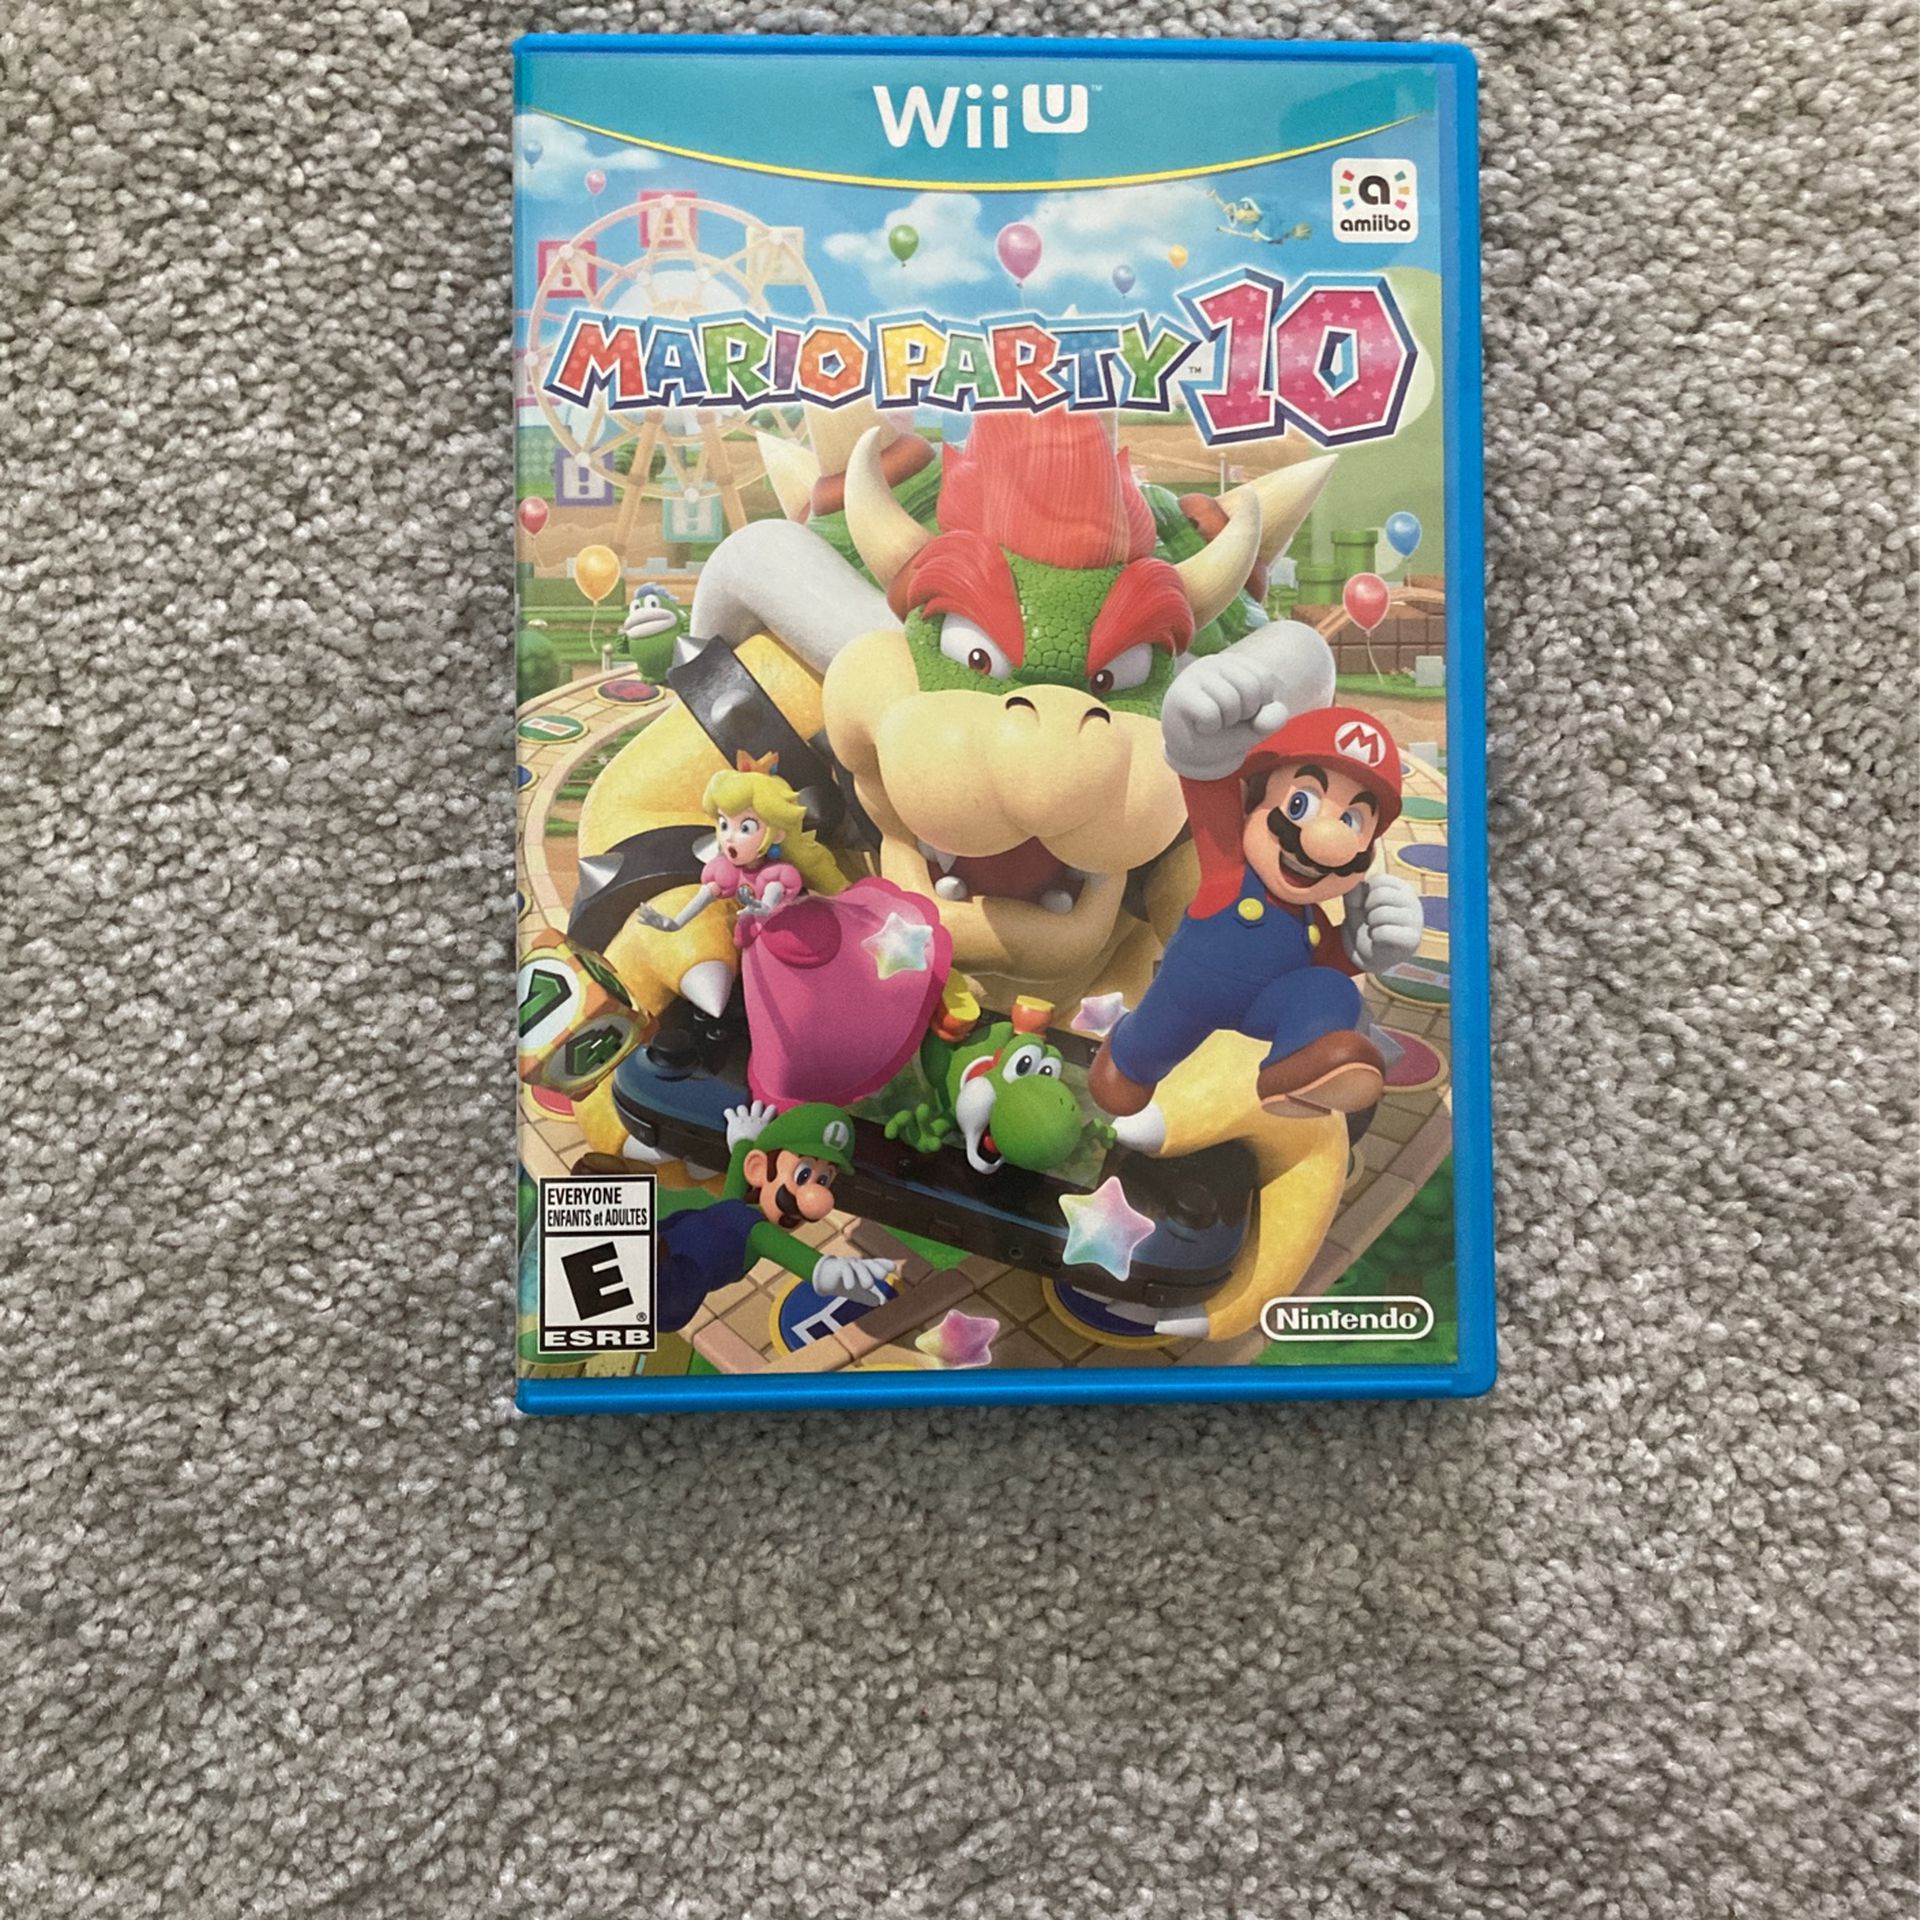 Mario Party 10 Wii U 2015